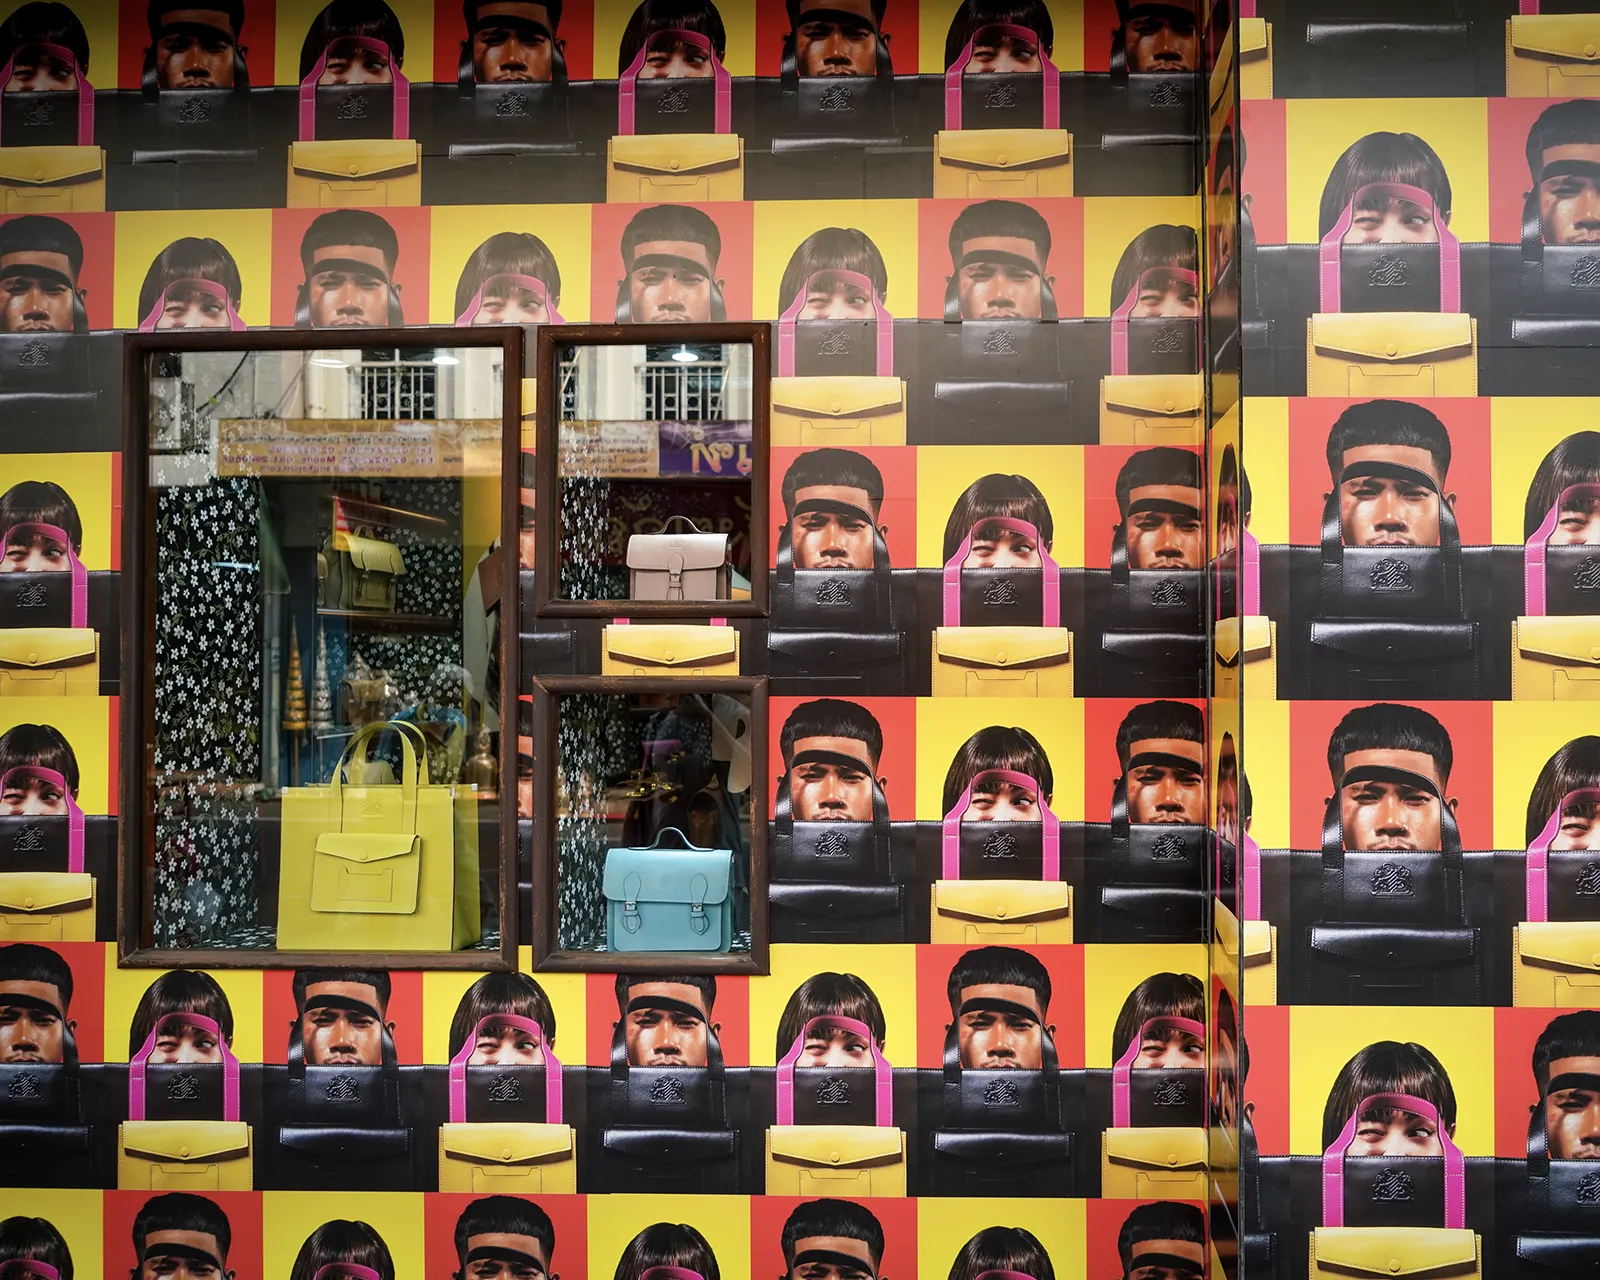 ภายนอกร้านทั้งหมด wrap ภาพ key visual ของคอลเลคชั่นทำให้ดูโดดเด่นมาก